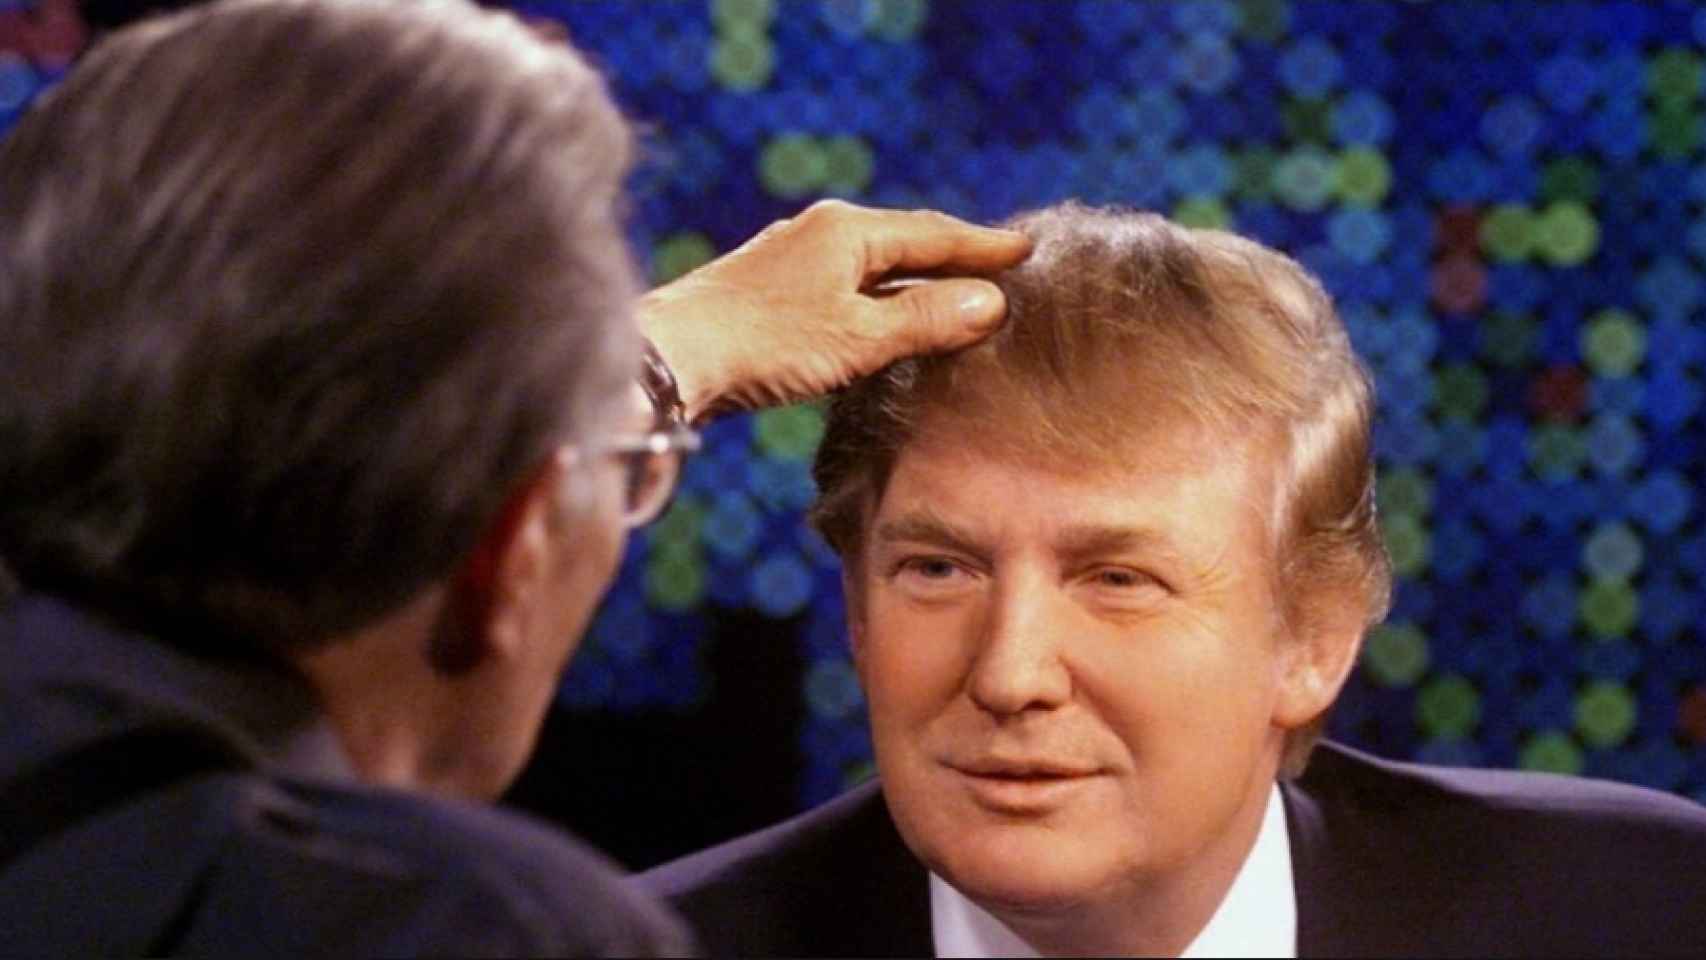 Larry King comprueba el pelo de Donald Trump en una entrevista